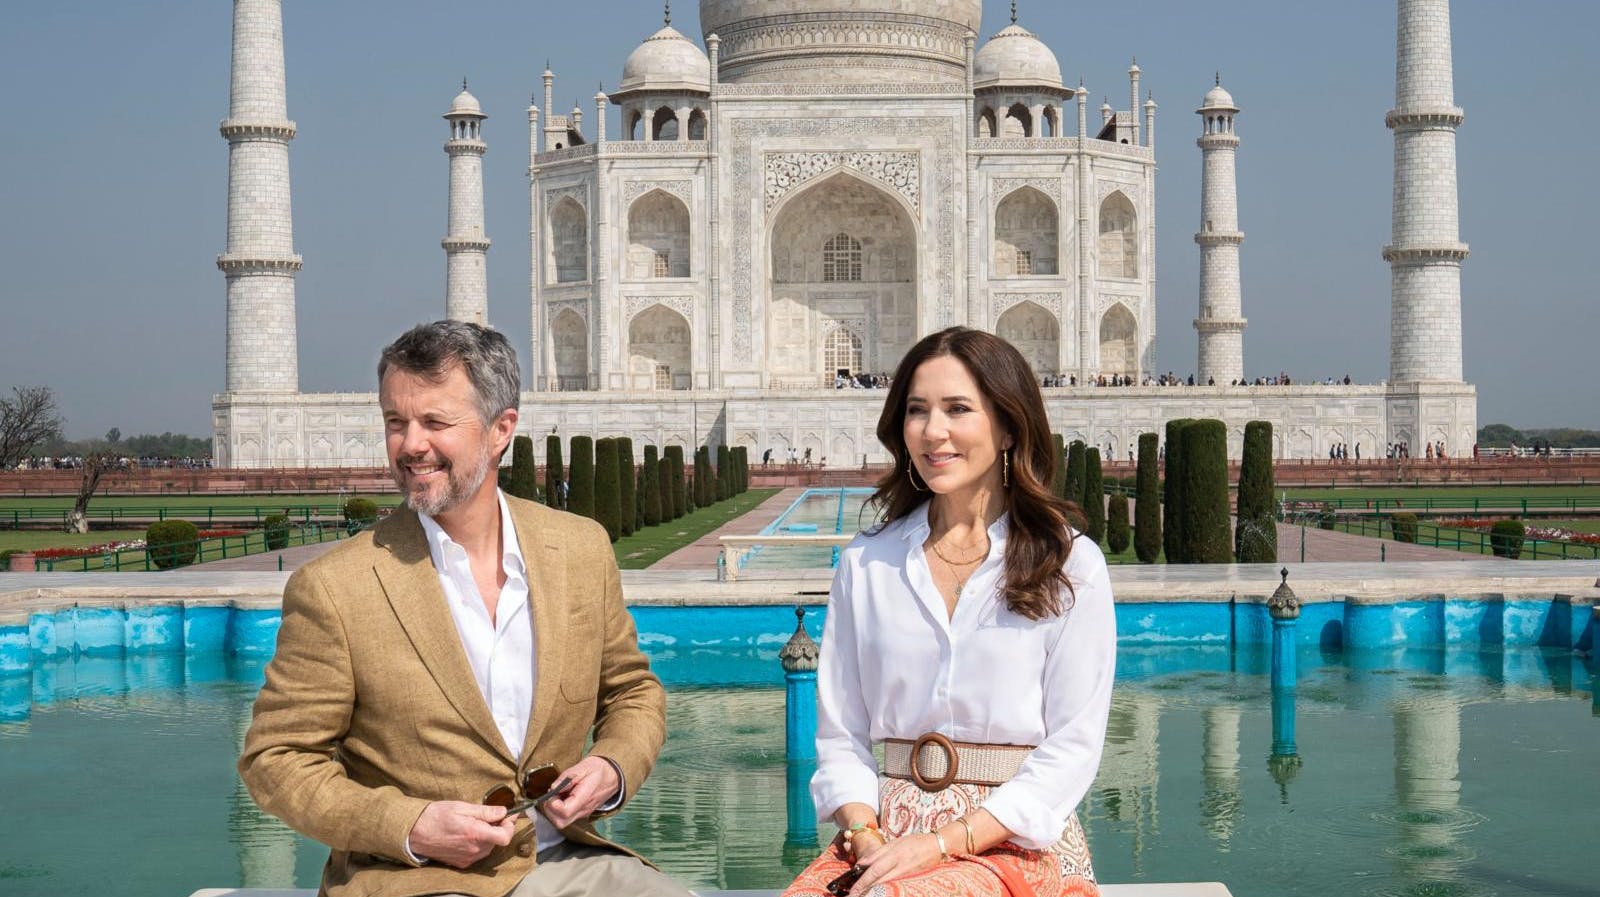 Kronprins Frederik og kronprinsse Mary blev selvfølgelig også foreviget foran ikoniske Taj Mahal.